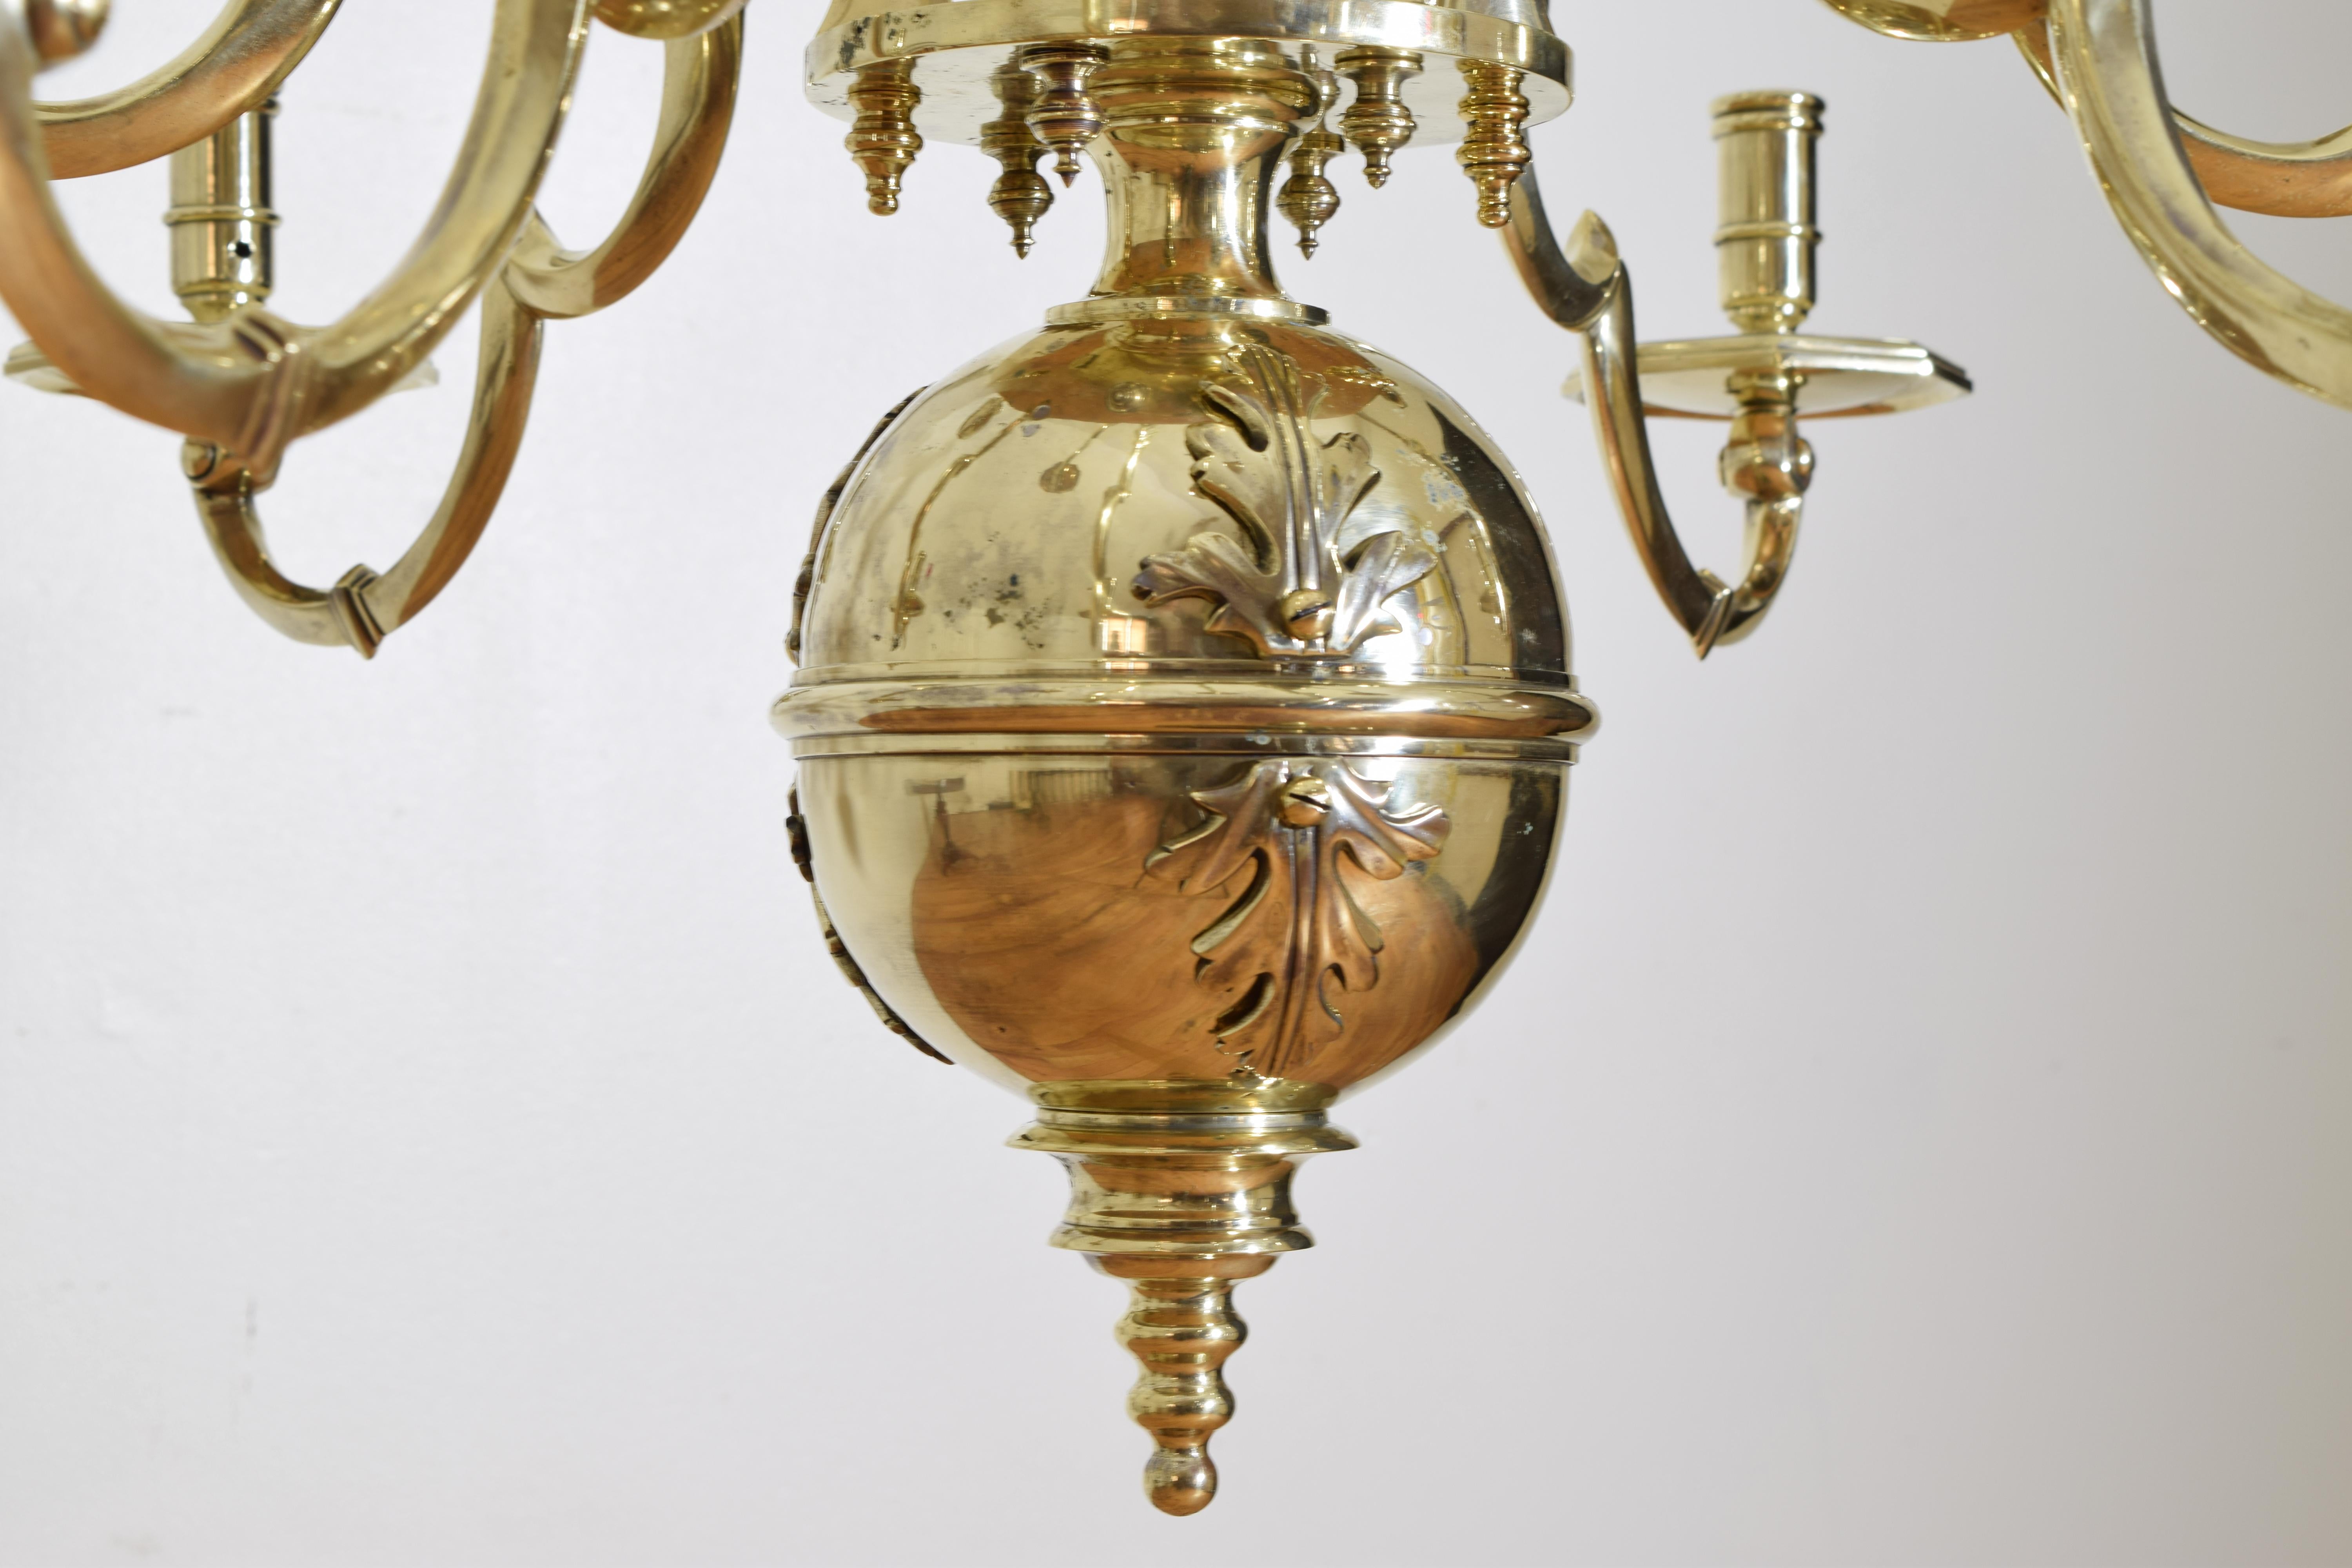 Exceptionnel lustre de style baroque néerlandais à 2 étages et 12 lumières en laiton, 3rdq 19ème siècle 1